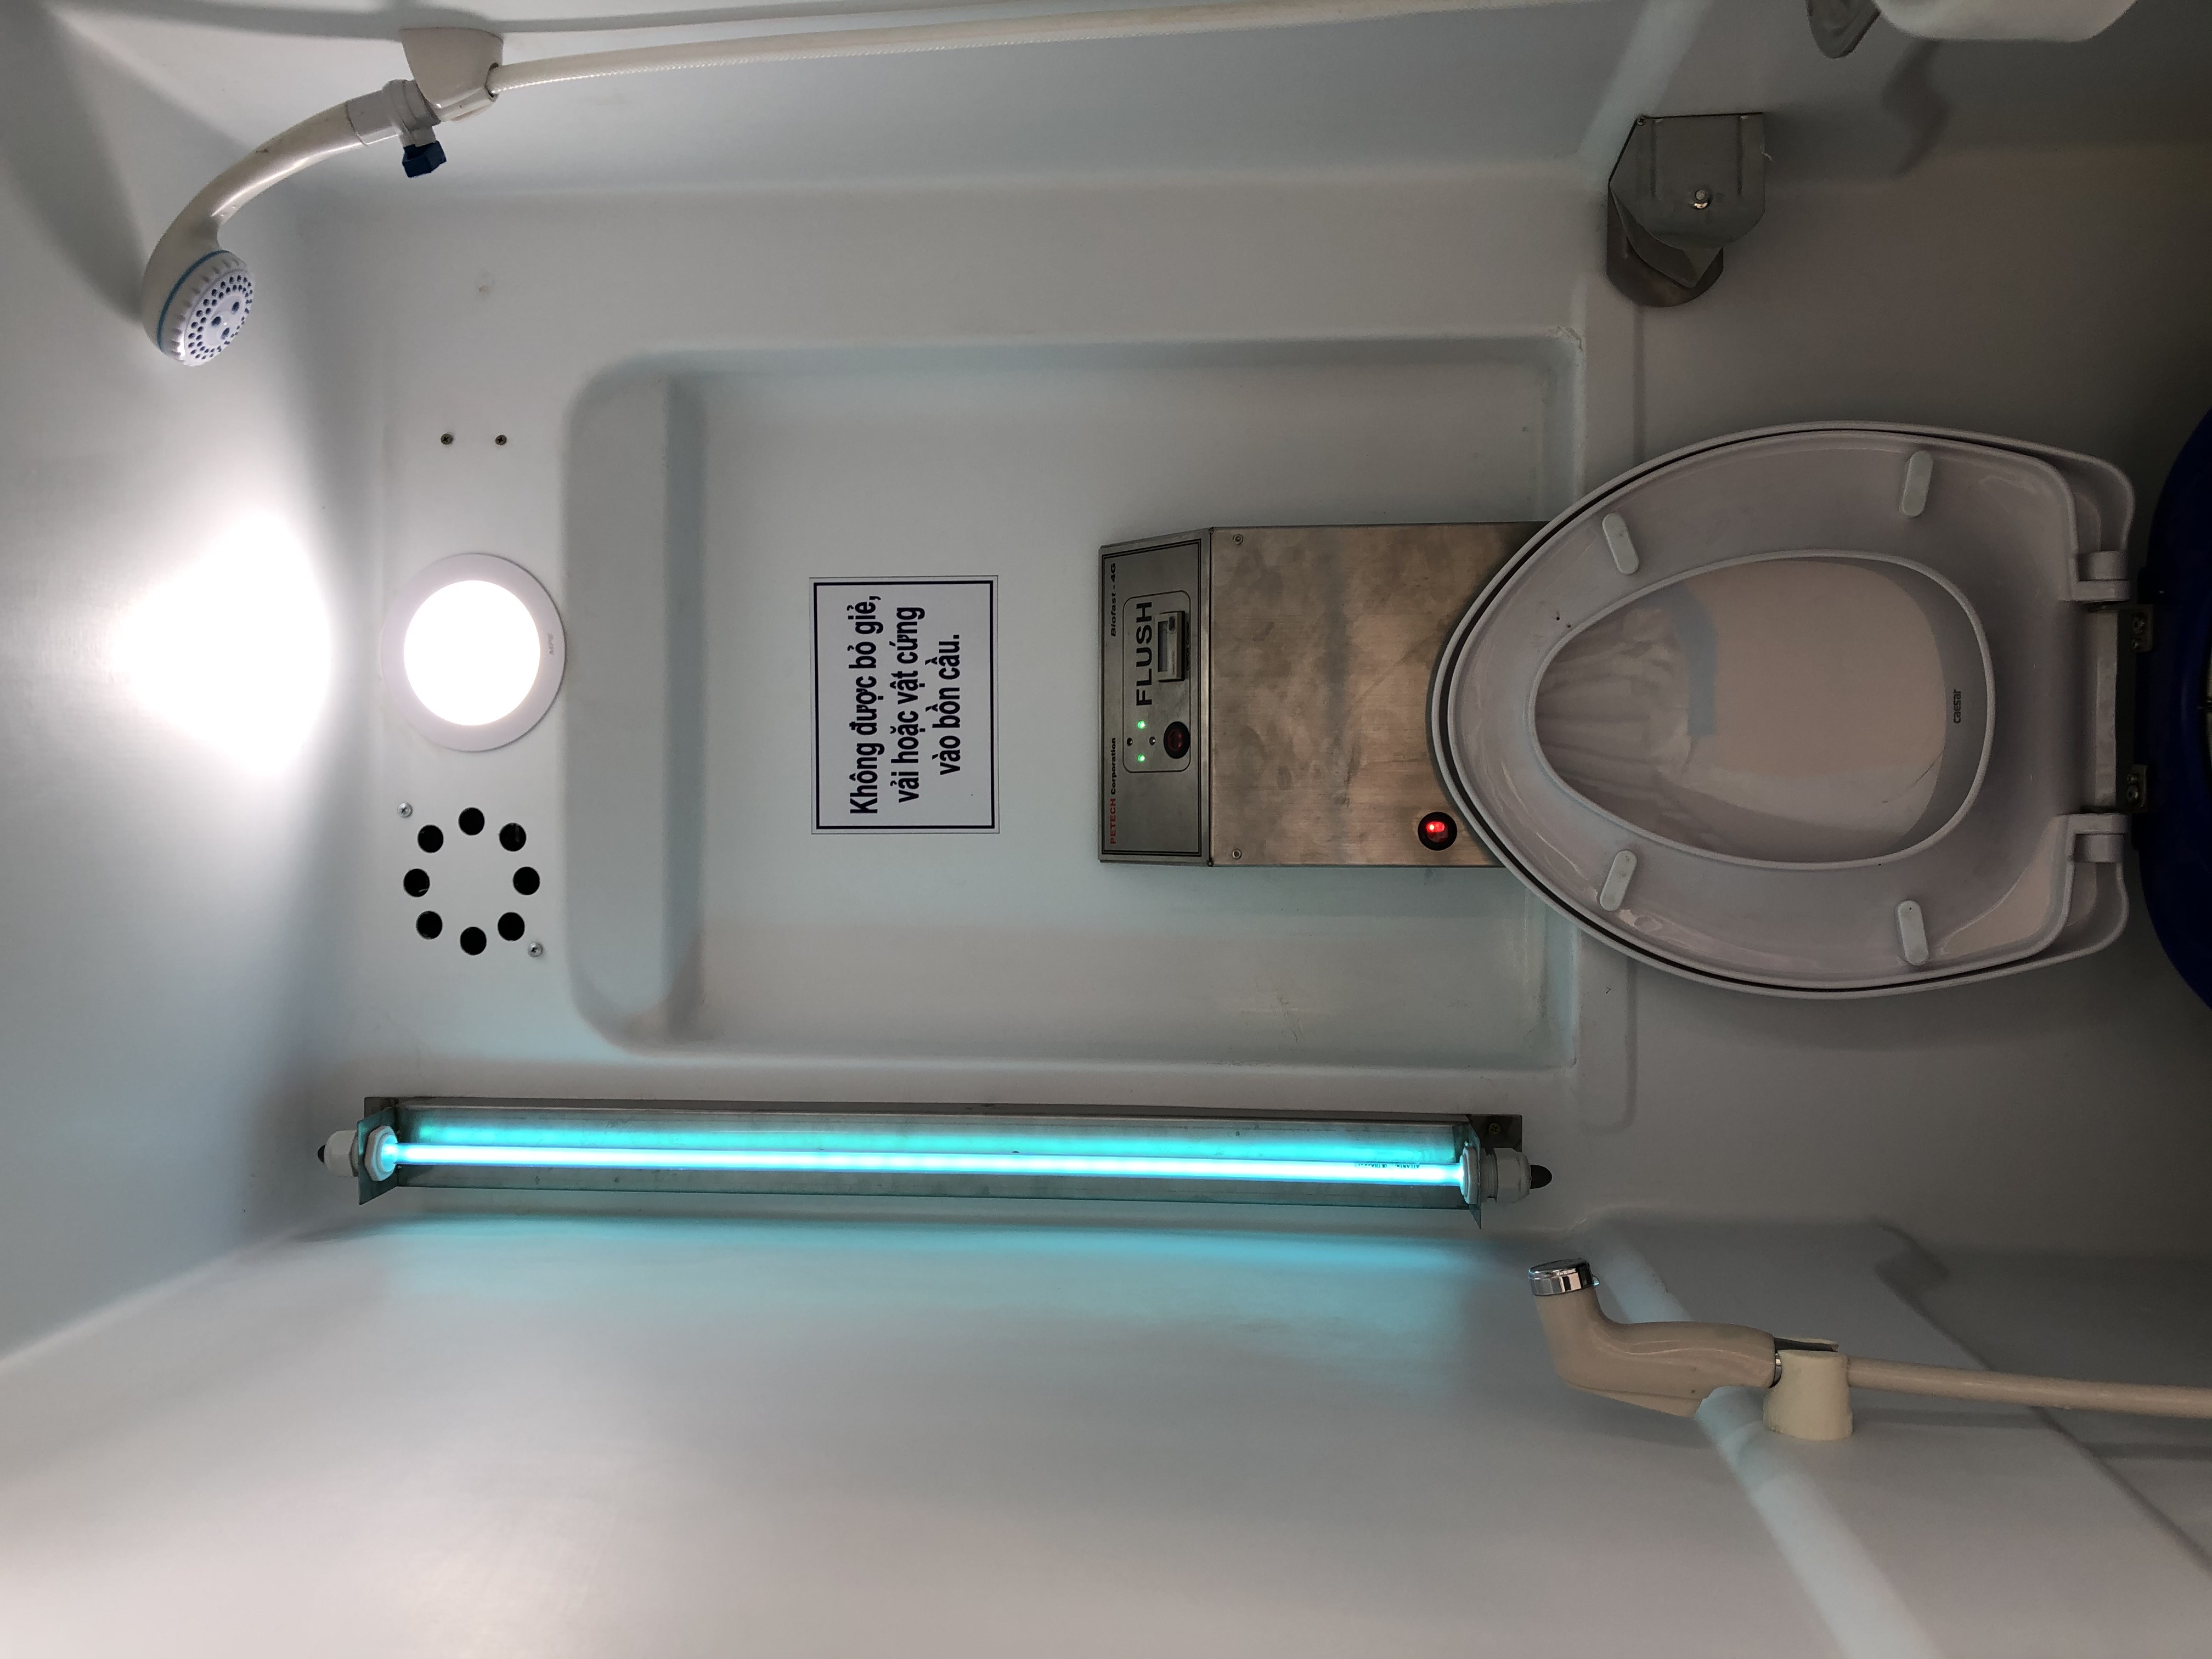 Đèn uv diệt khuẩn trong toilet 4G-D